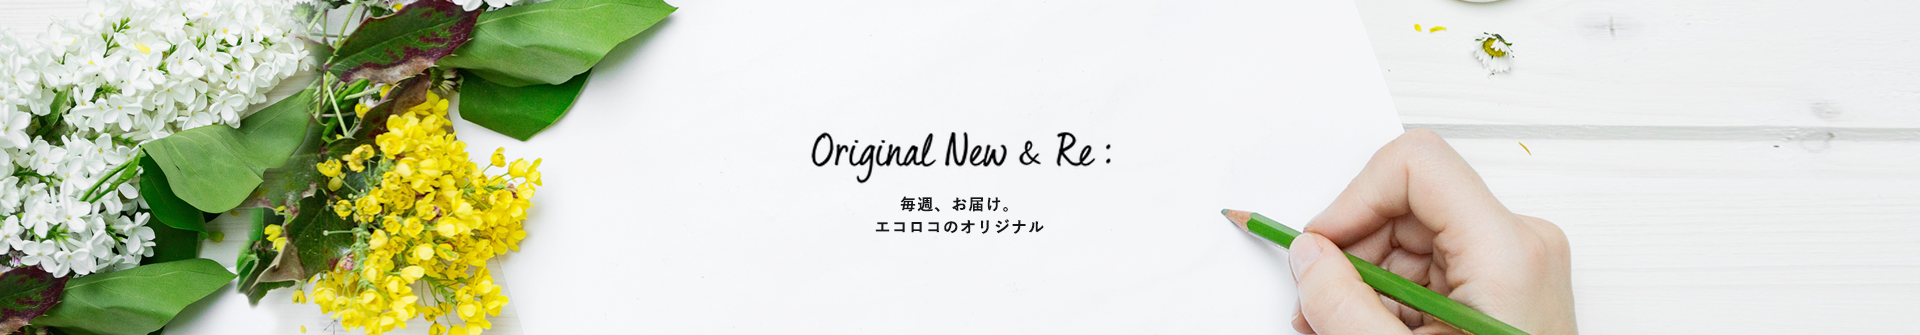 Original New & Re